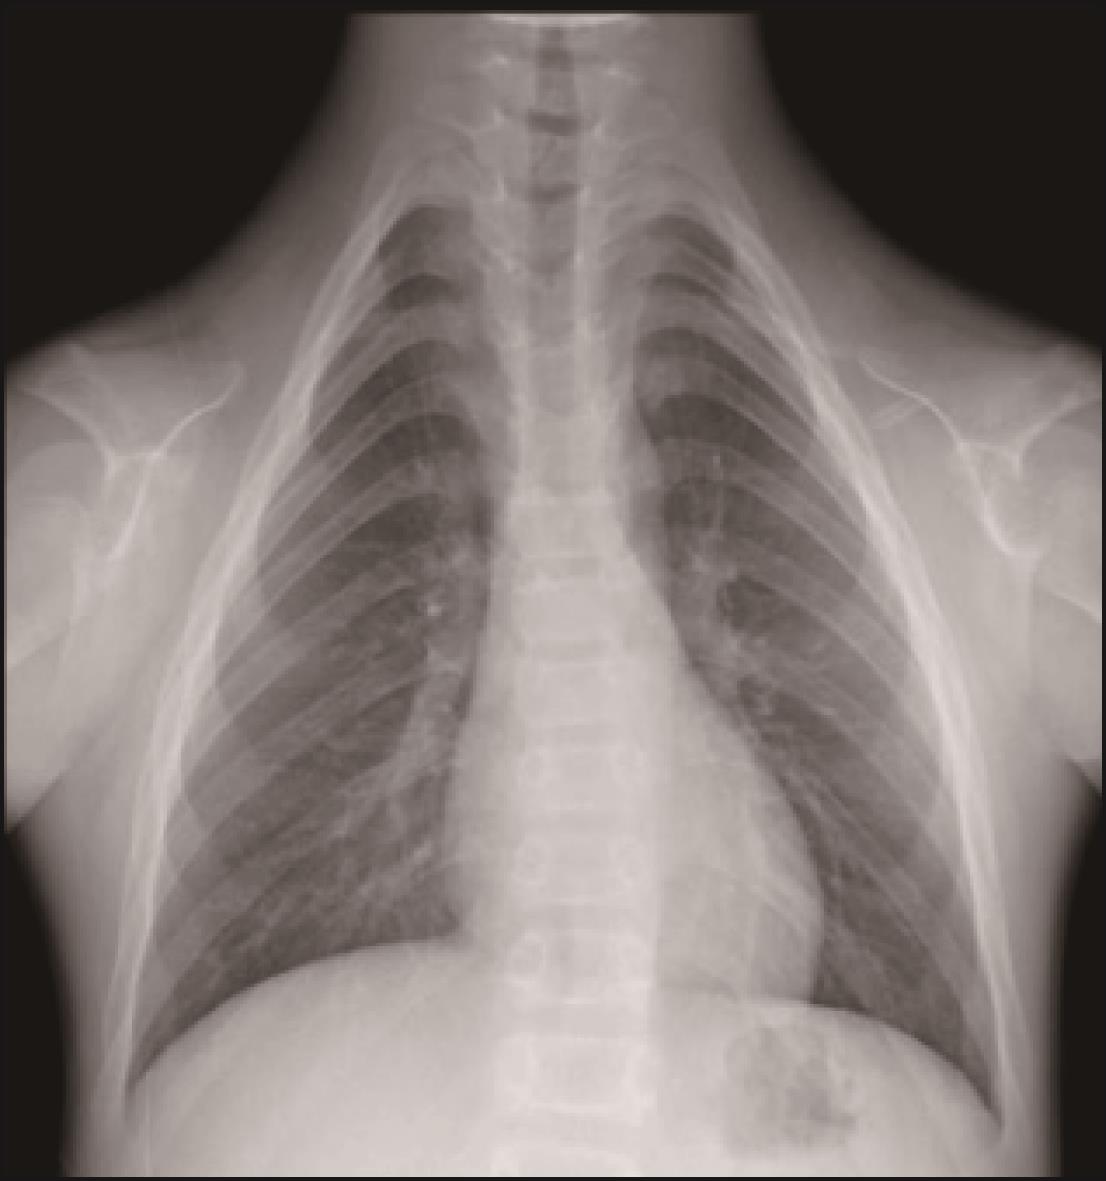 椎体软骨发育不良伴免疫调节异常影像表现1例 - 中华放射学杂志